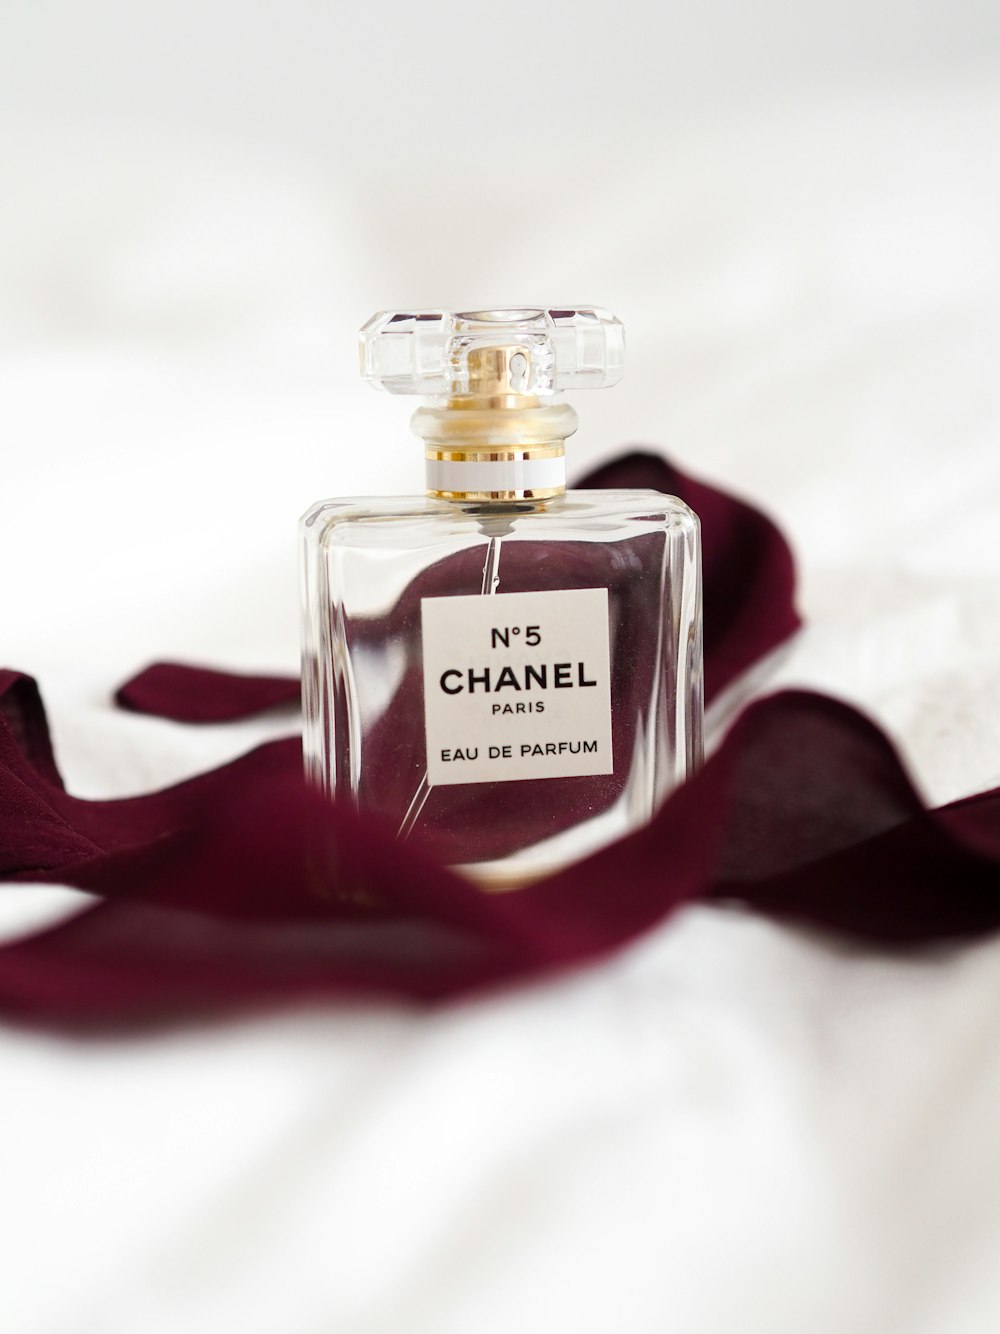 No 5 Chanel Perfume Bottle Photo Free Image On Unsplash